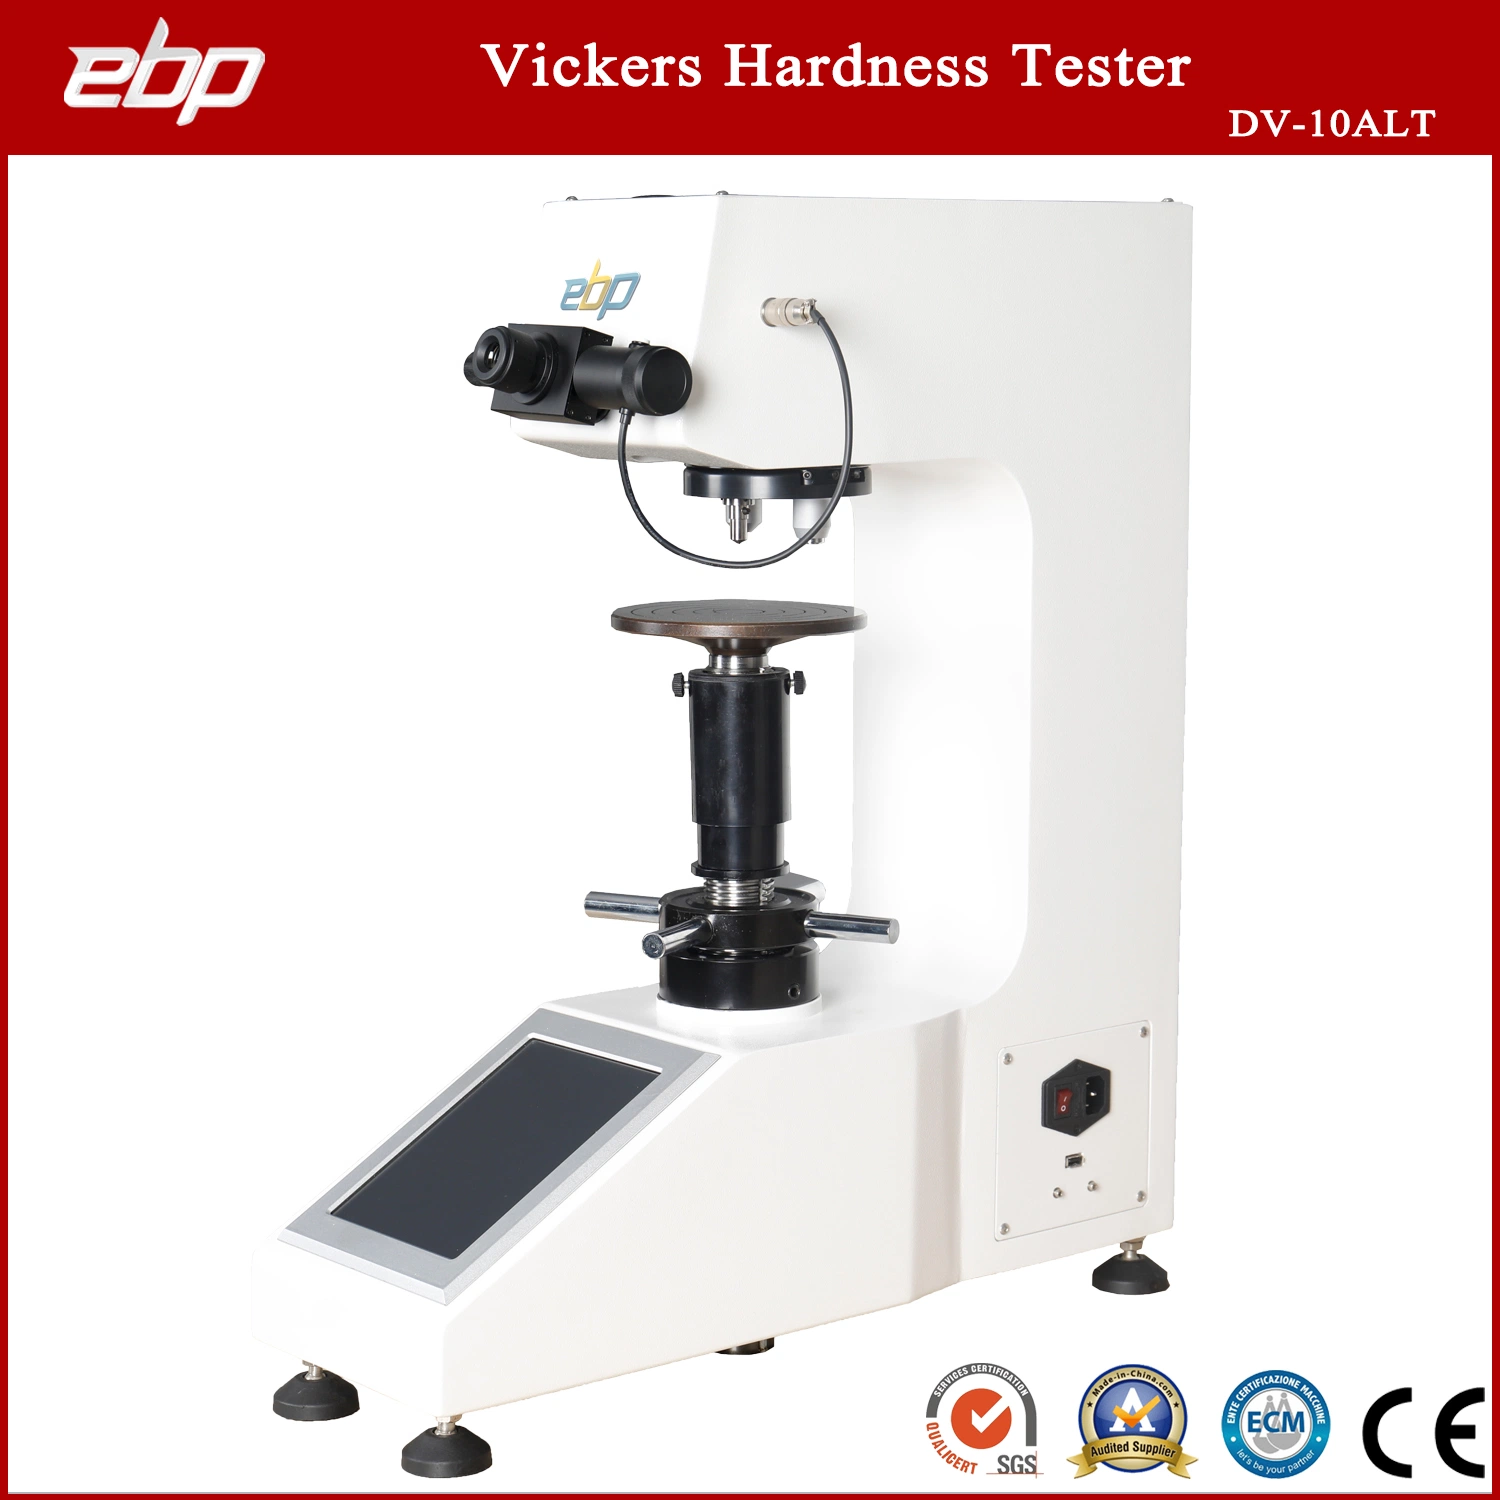 Tela de Toque Digital Macro máquina de ensaio de dureza Vickers com célula de carga de alta precisão